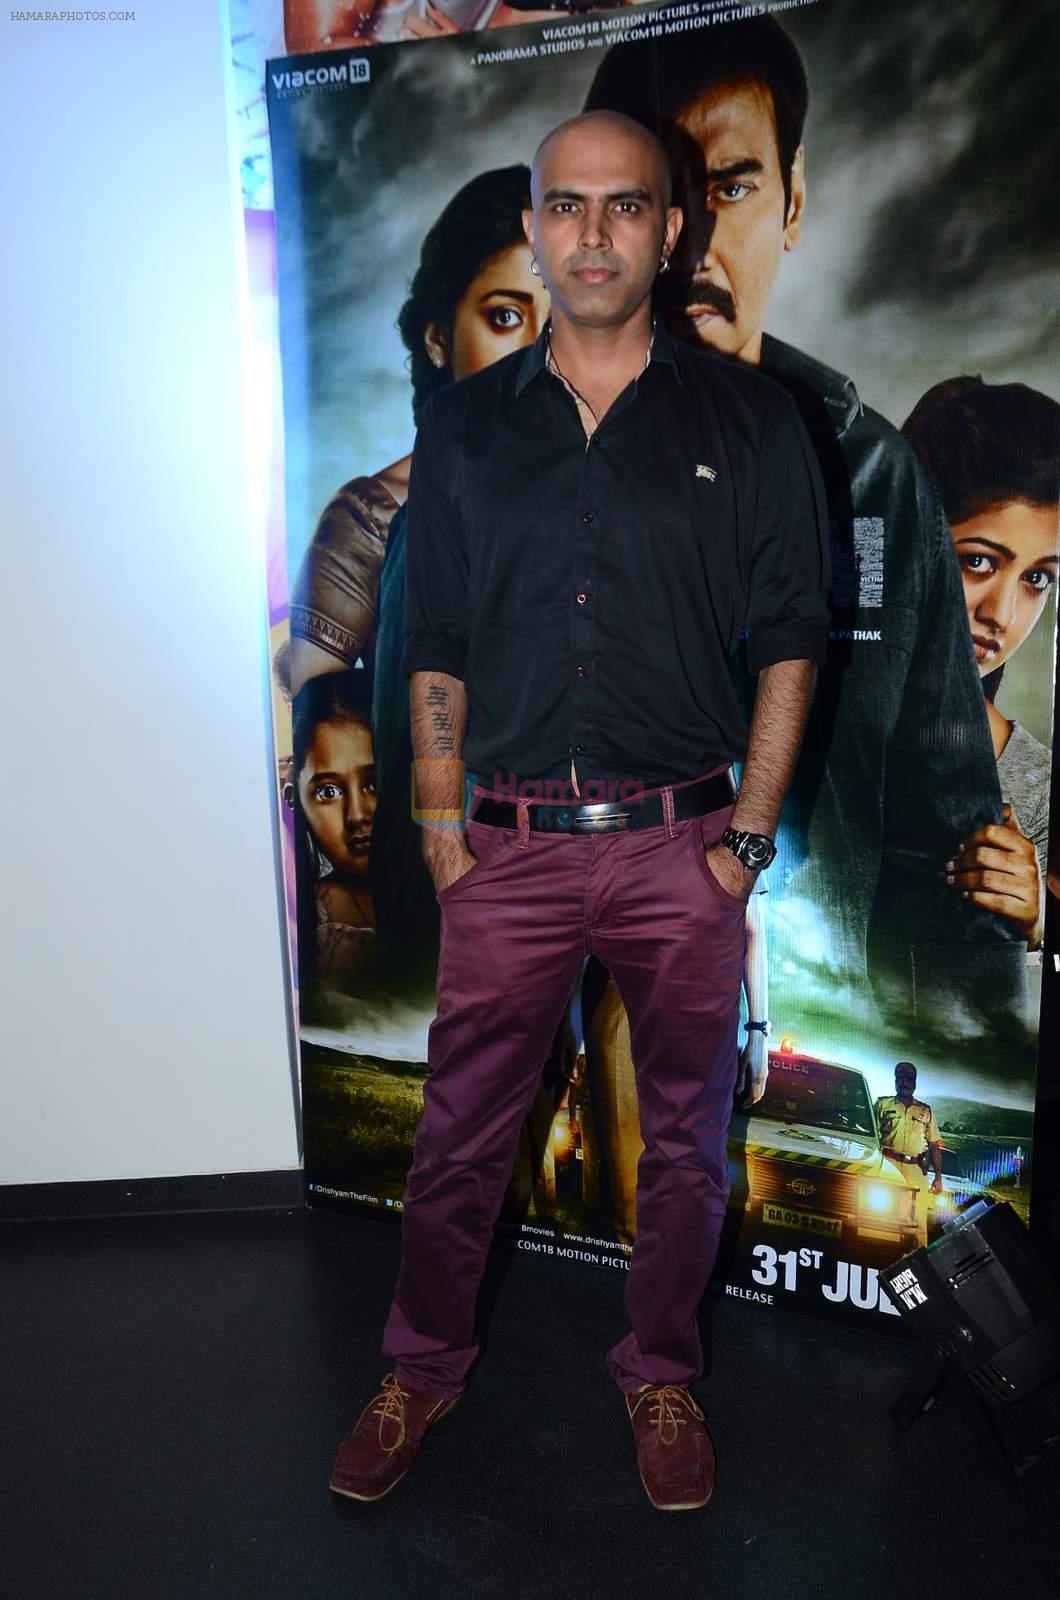 Rajiv Laxman at Drishyam screening in Fun Republic on 28th July 2015